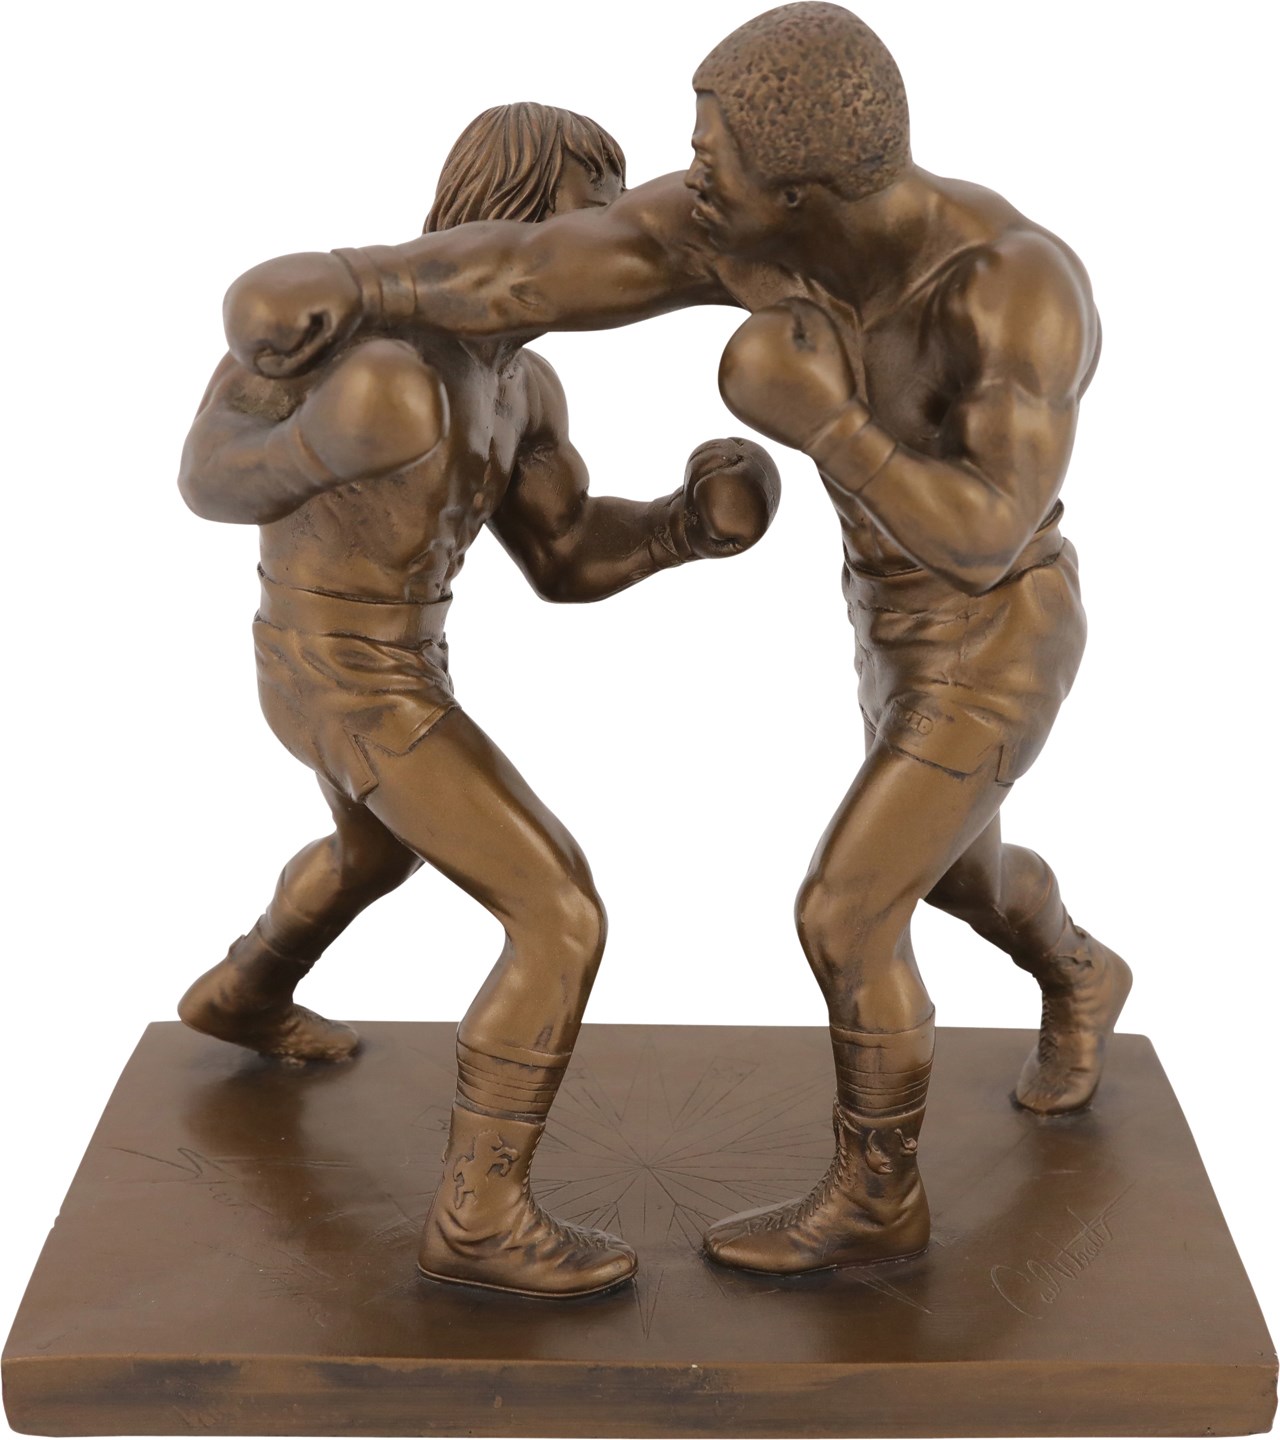 Muhammad Ali & Boxing - 1979 Rocky Balboa vs Apollo Creed Statue by Giovanni Schoeman